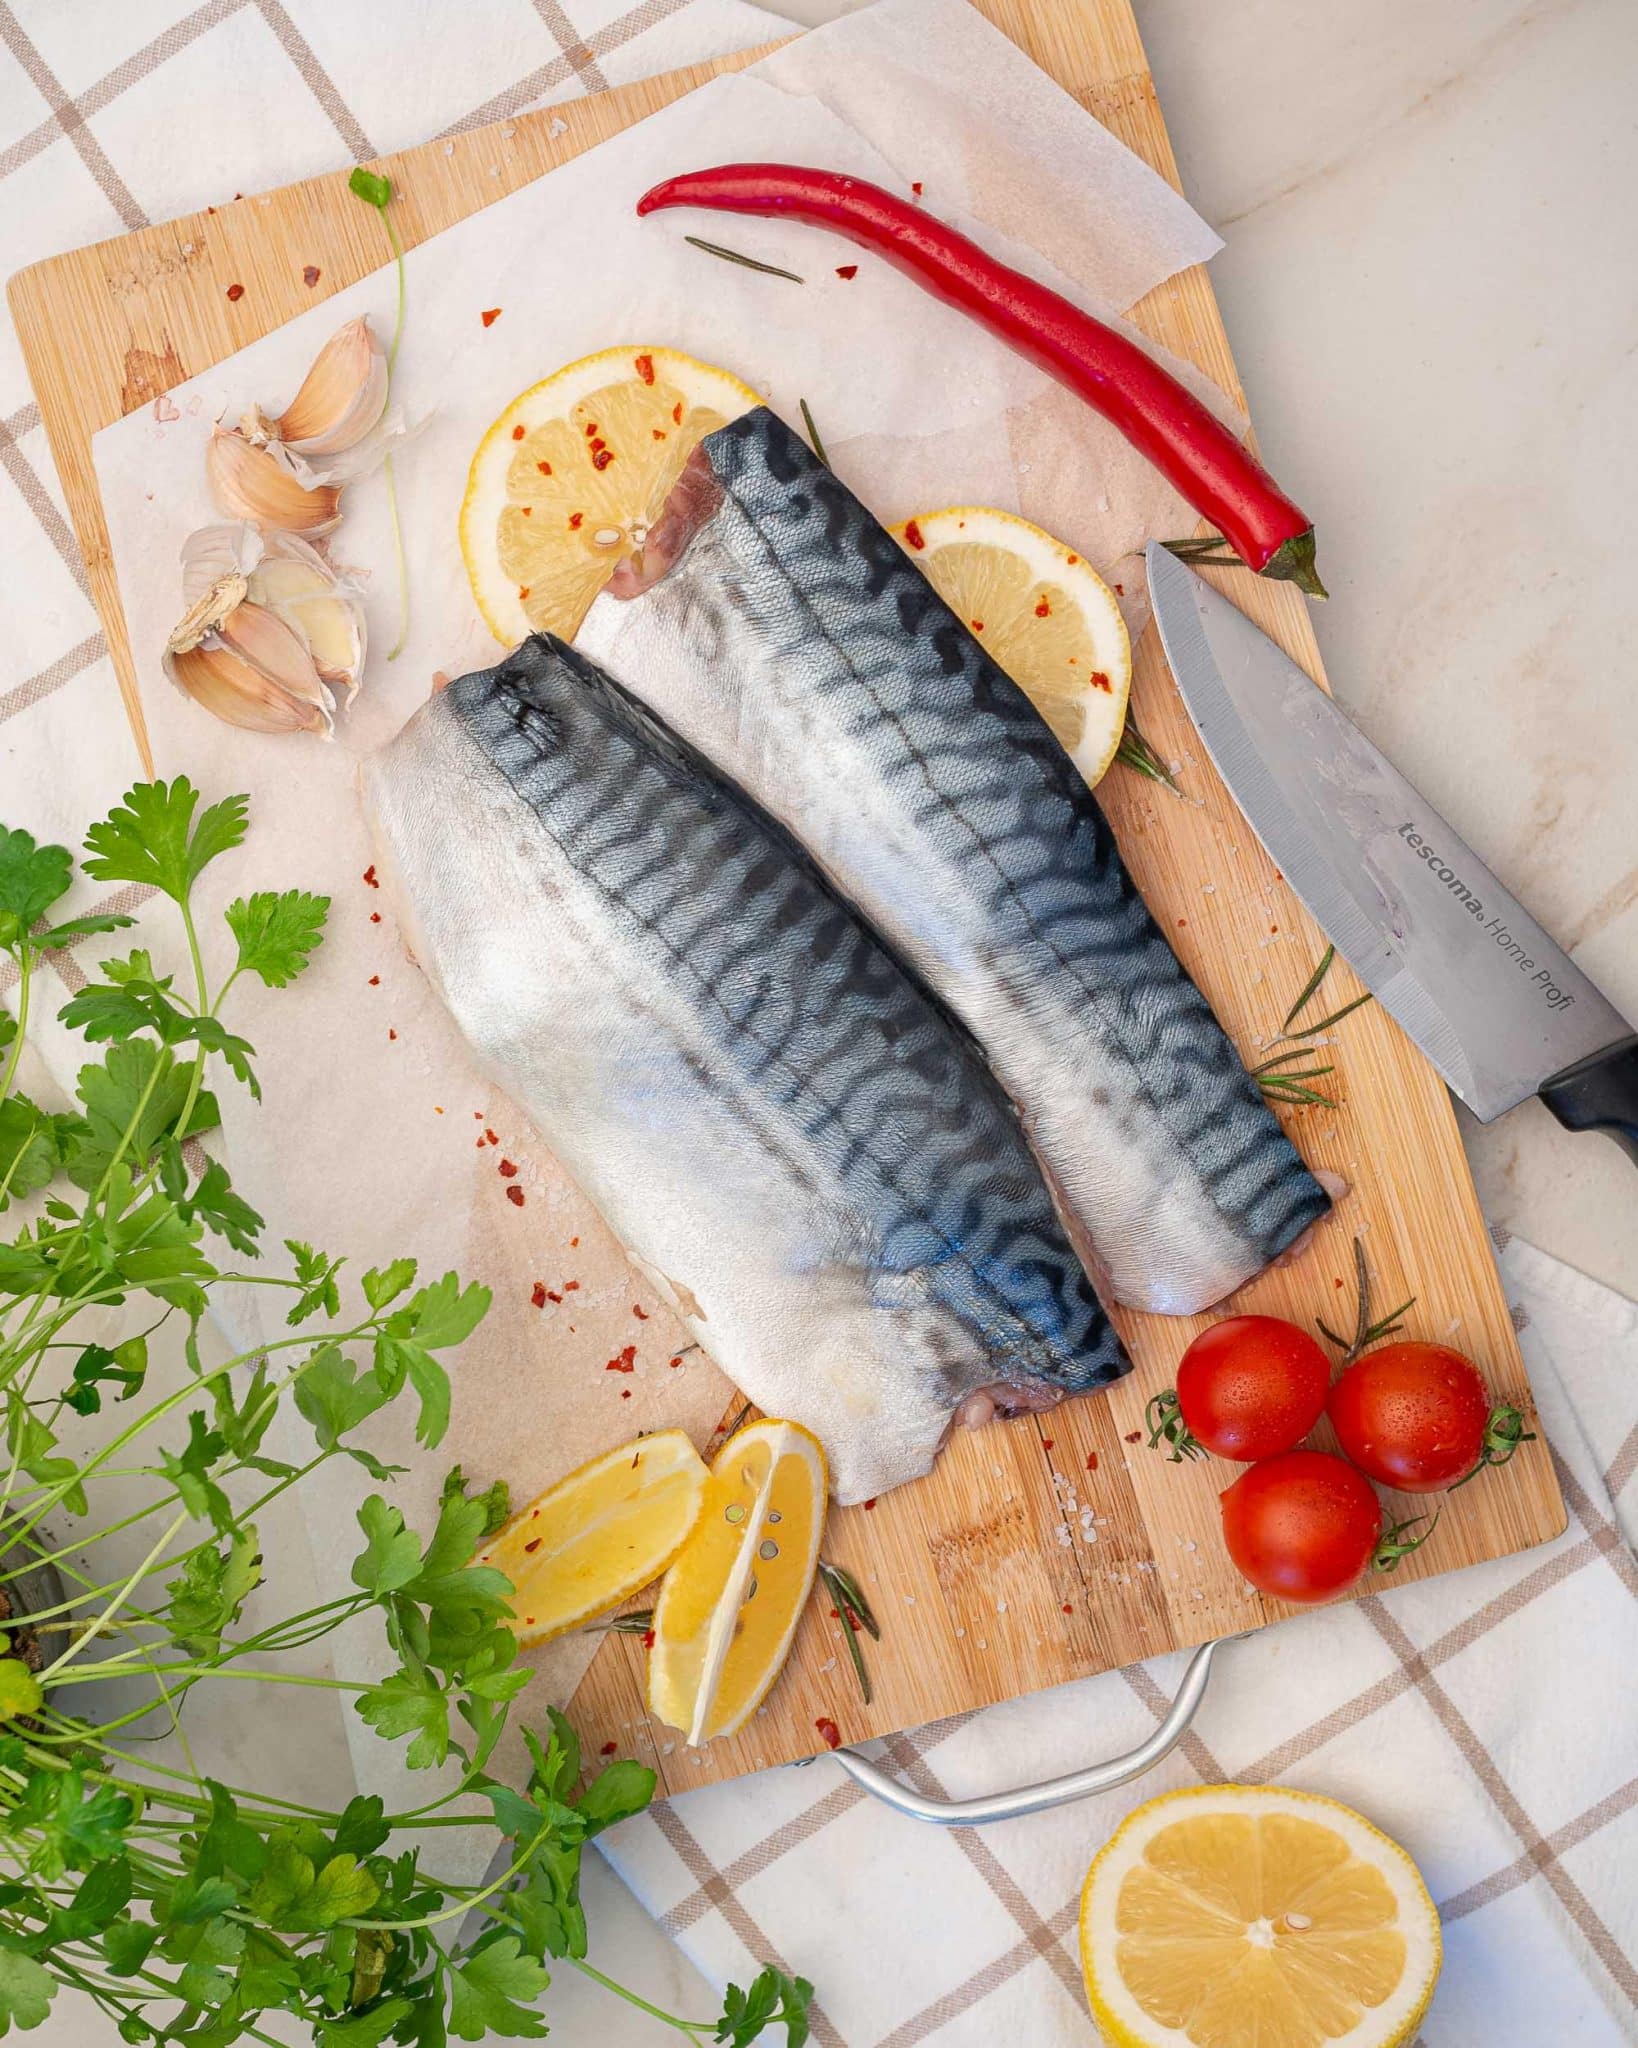 recipe of baked mackerel fillets